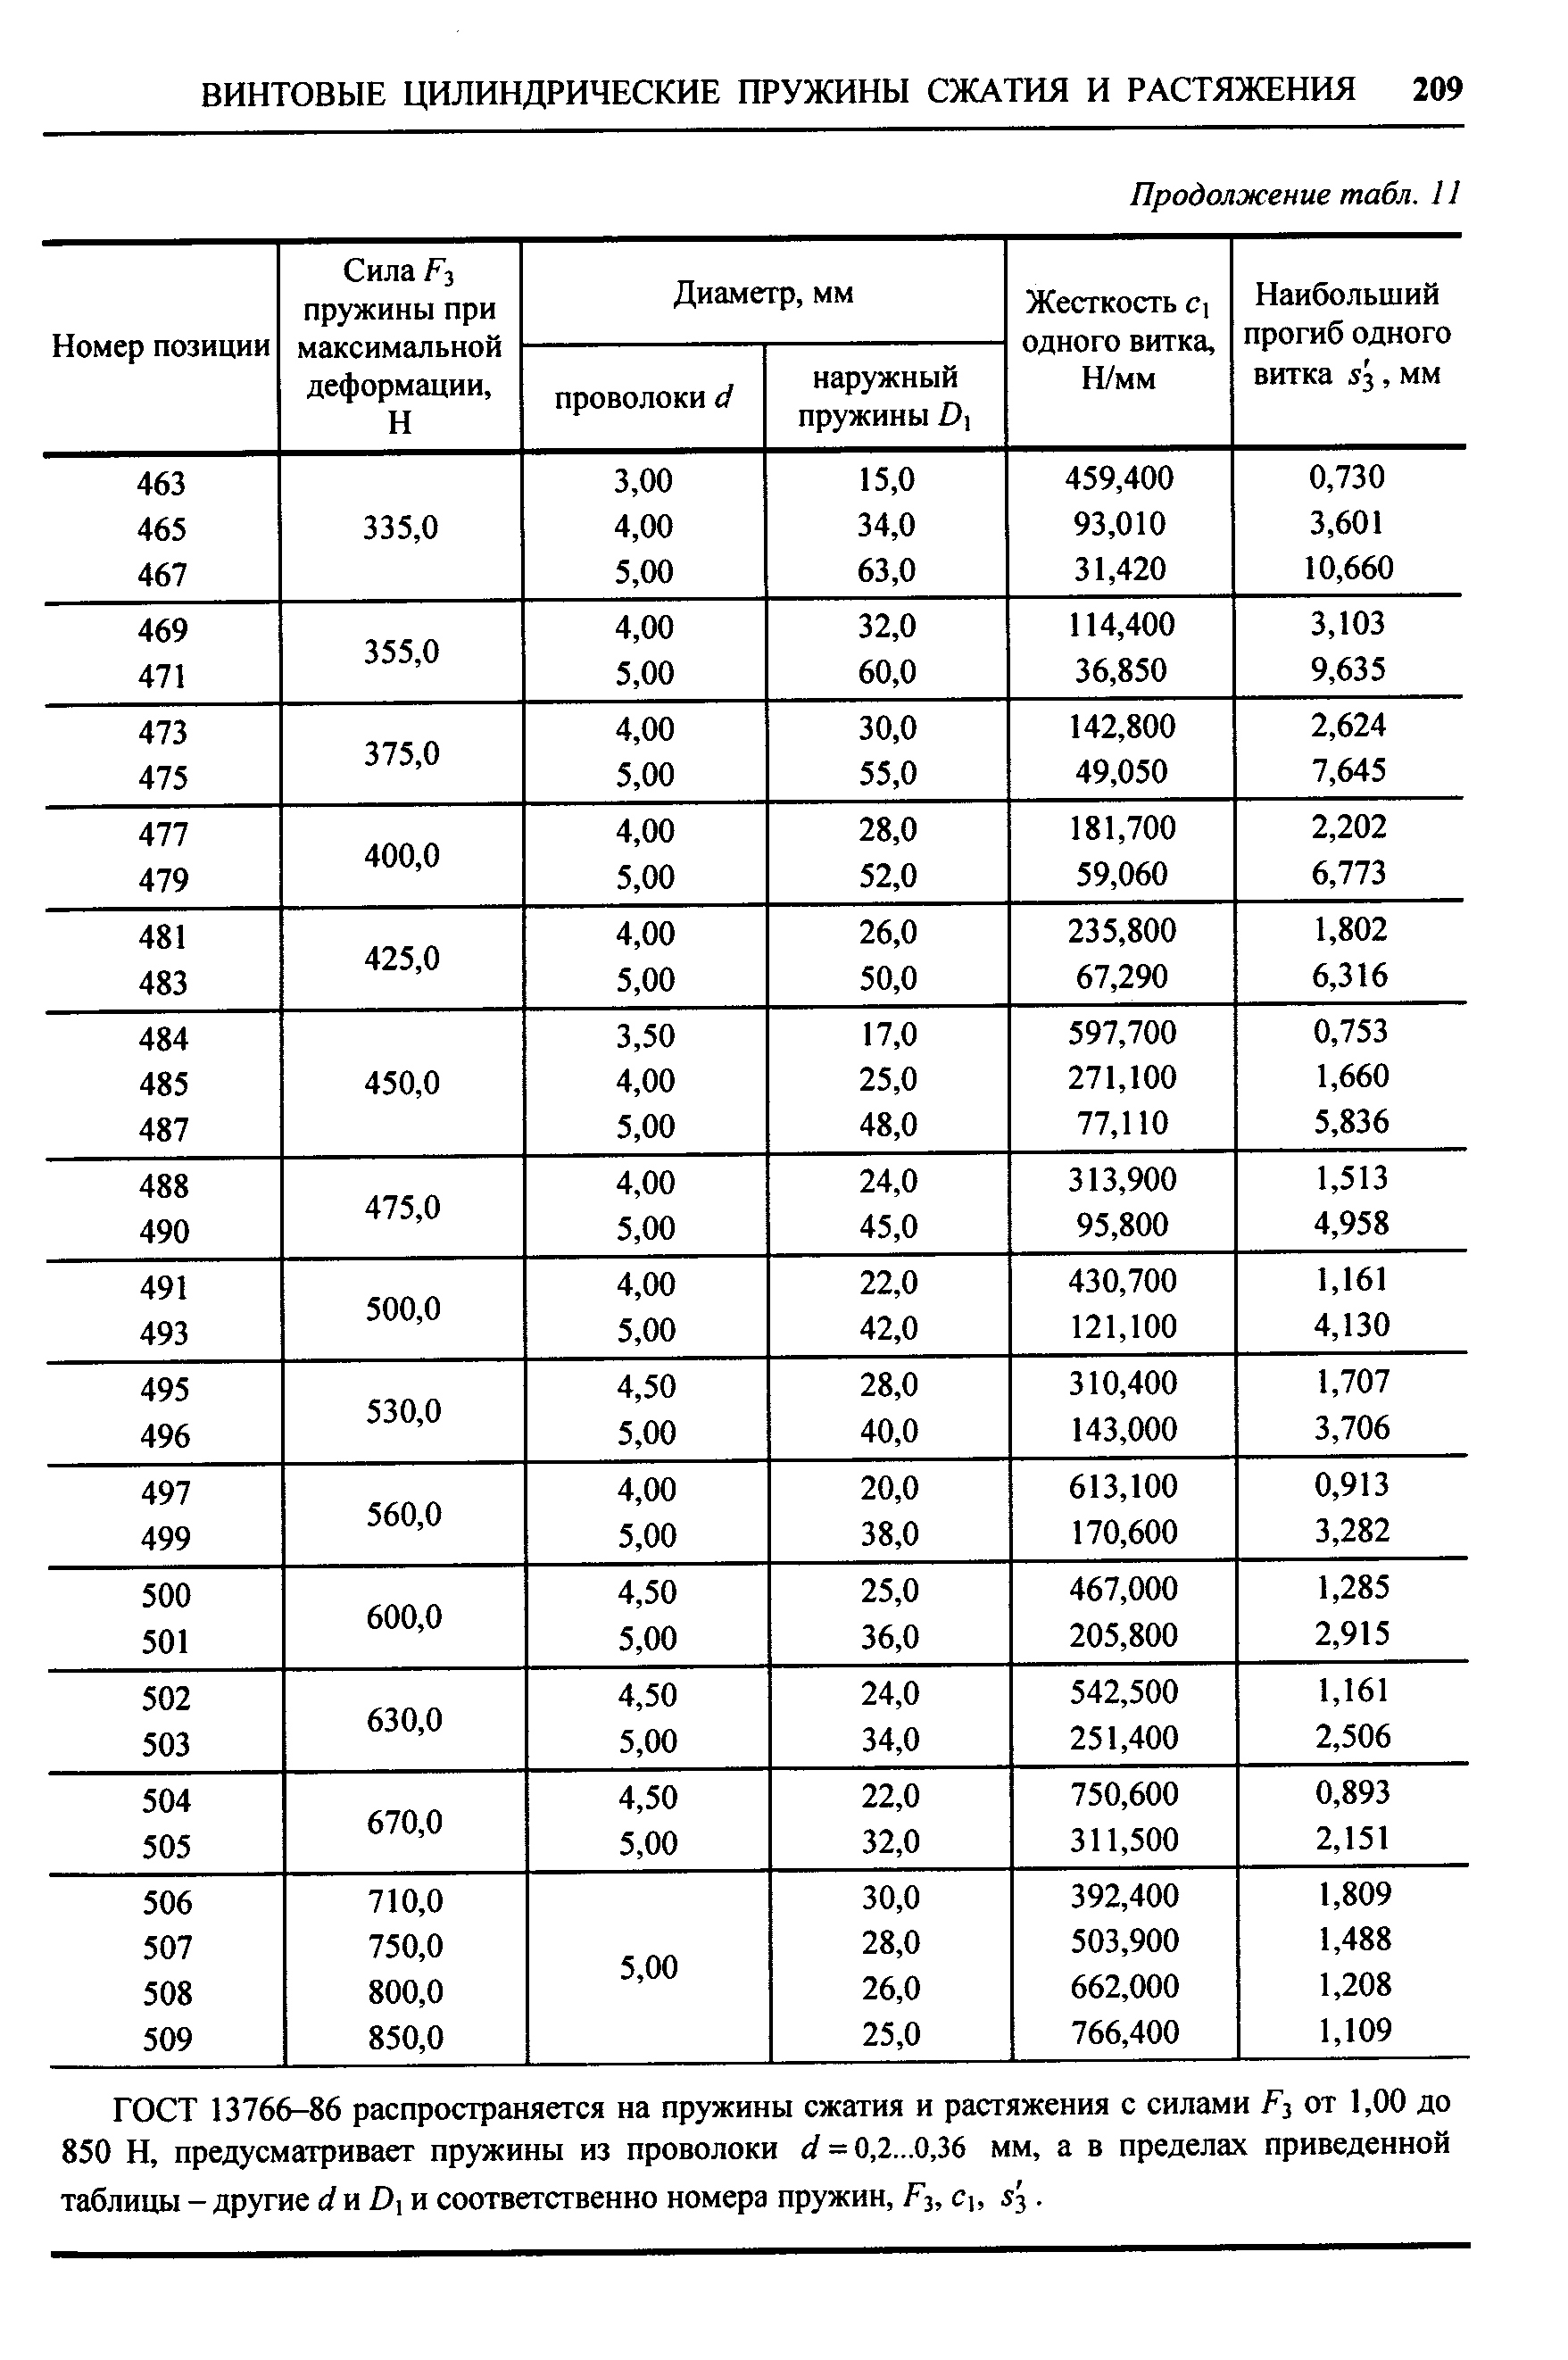 ГОСТ 13766-86 распространяется на пружины сжатия и растяжения с силами F3 от 1,00 до 850 Н, предусматривает пружины из проволоки d = 0,2...0,36 мм, а в пределах приведенной таблицы - другие и Di и соответственно номера пружин, F3, С, s .
